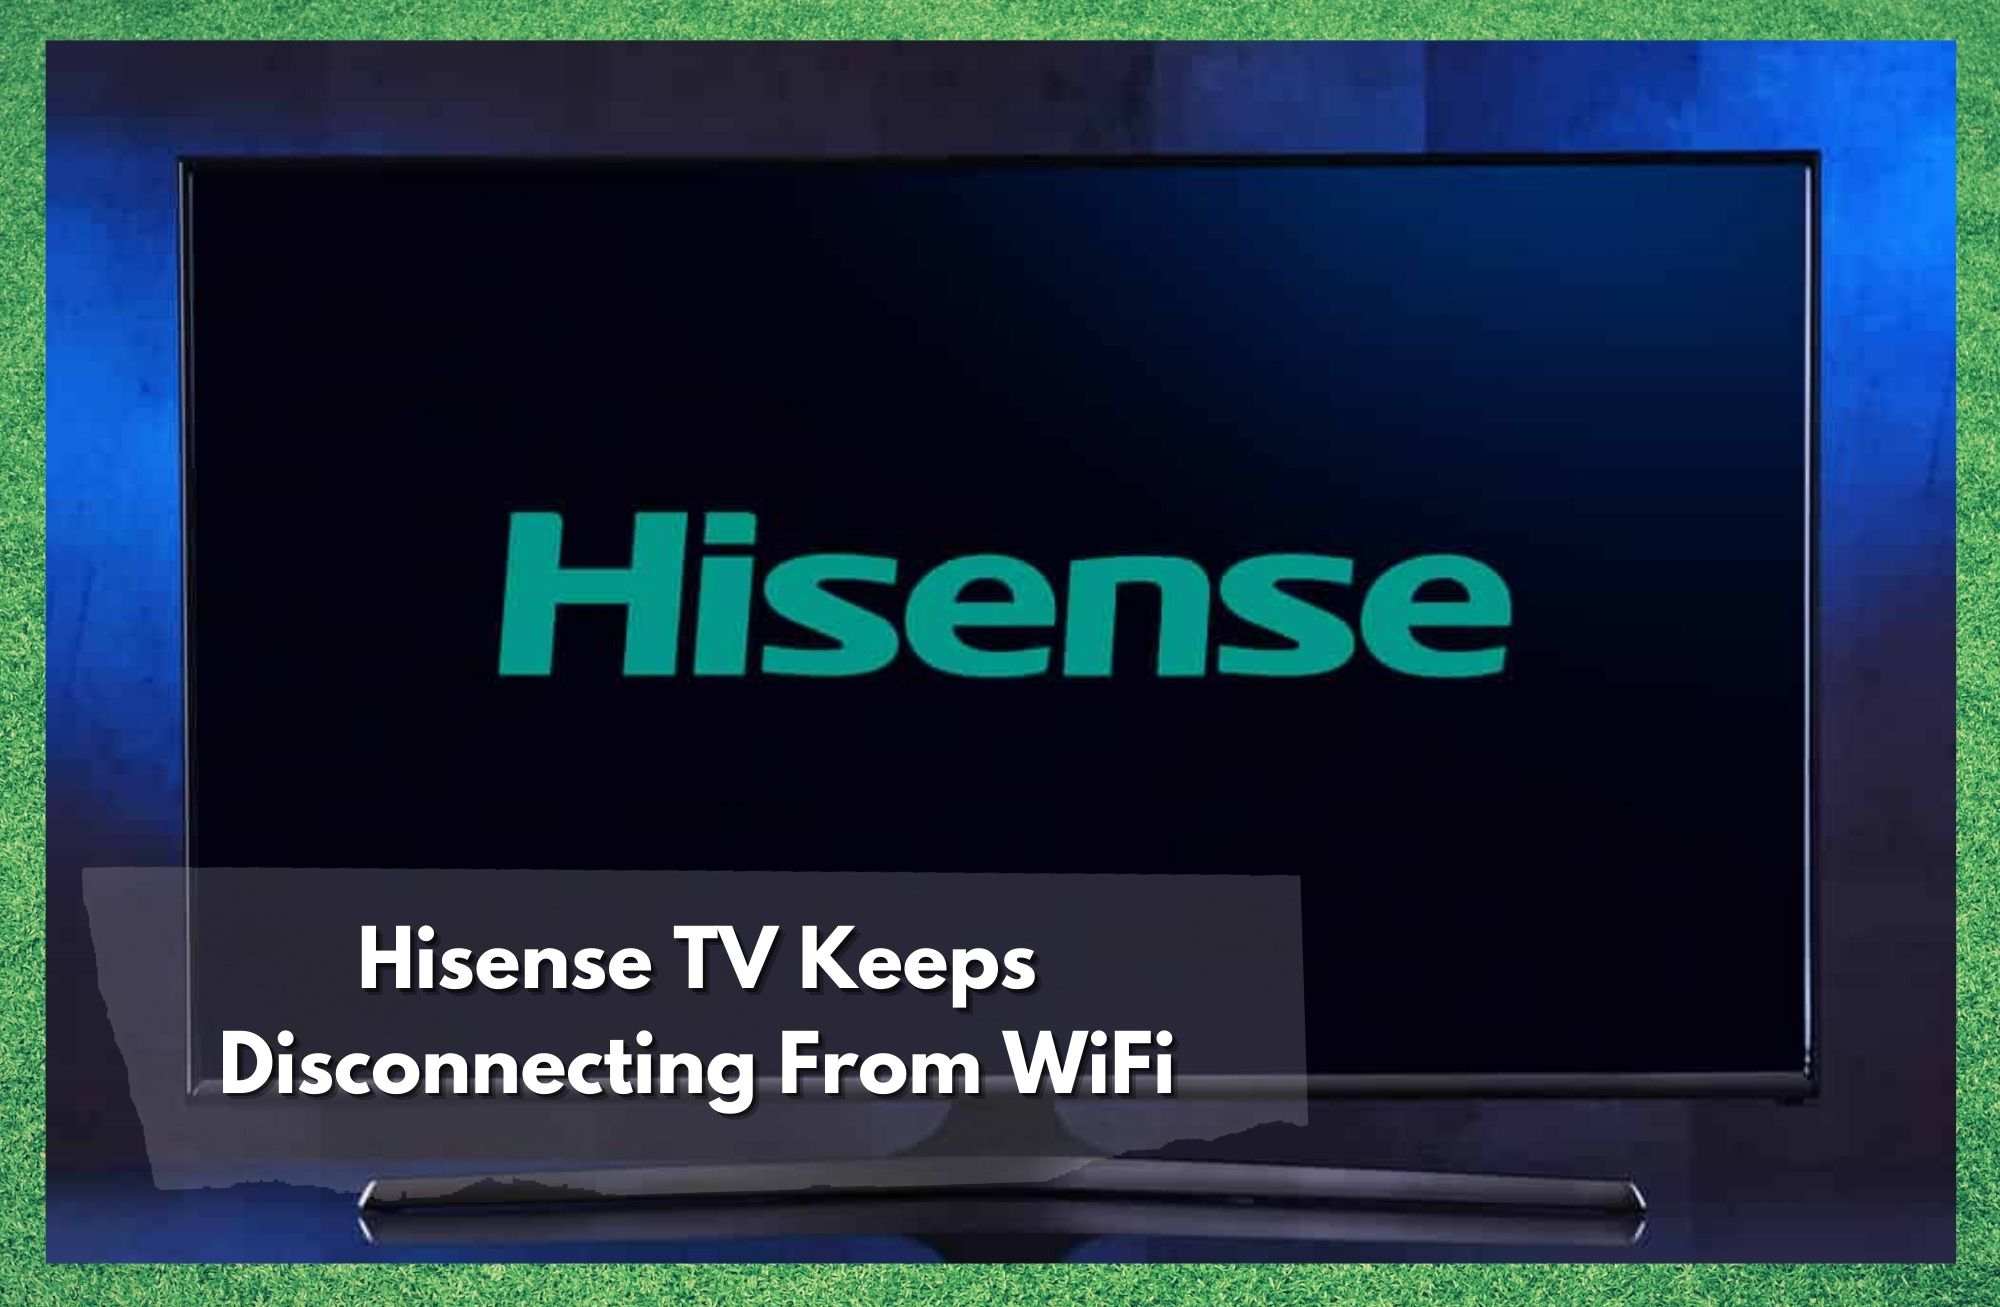 Тэлевізар Hisense пастаянна адключаецца ад Wi-Fi: 5 выпраўленняў